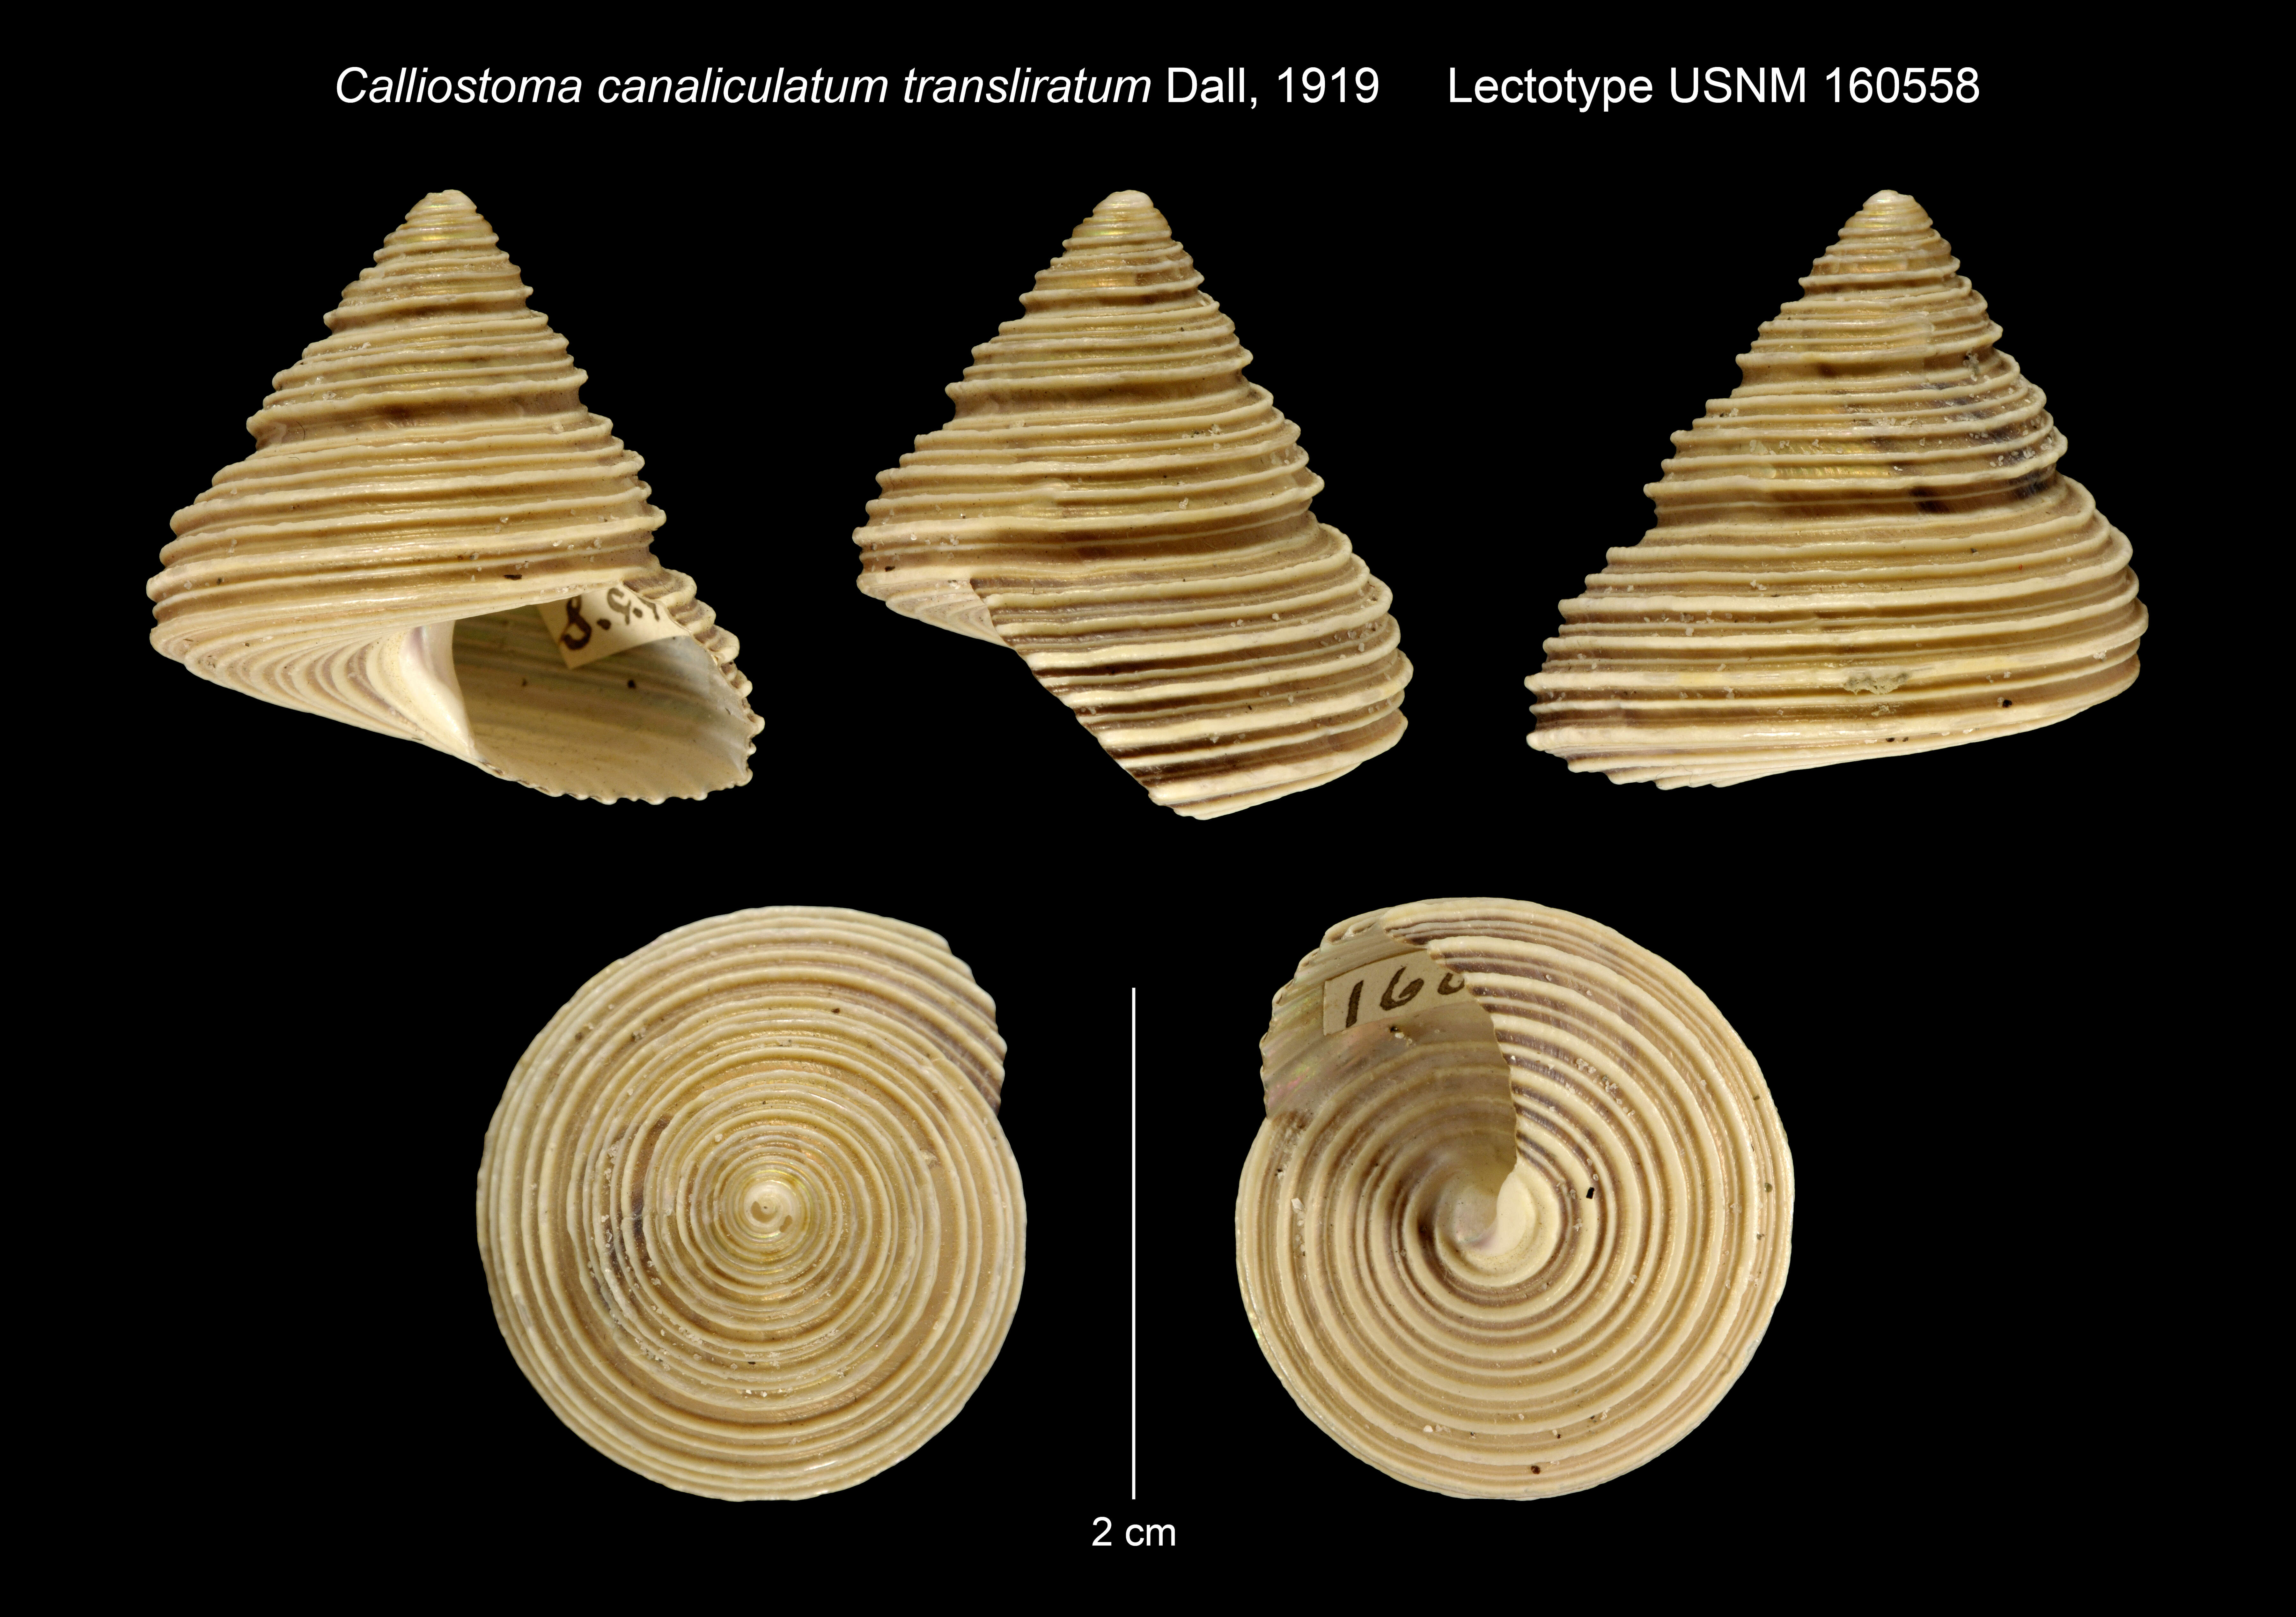 Image de Calliostoma canaliculatum var. transliratum Dall 1919